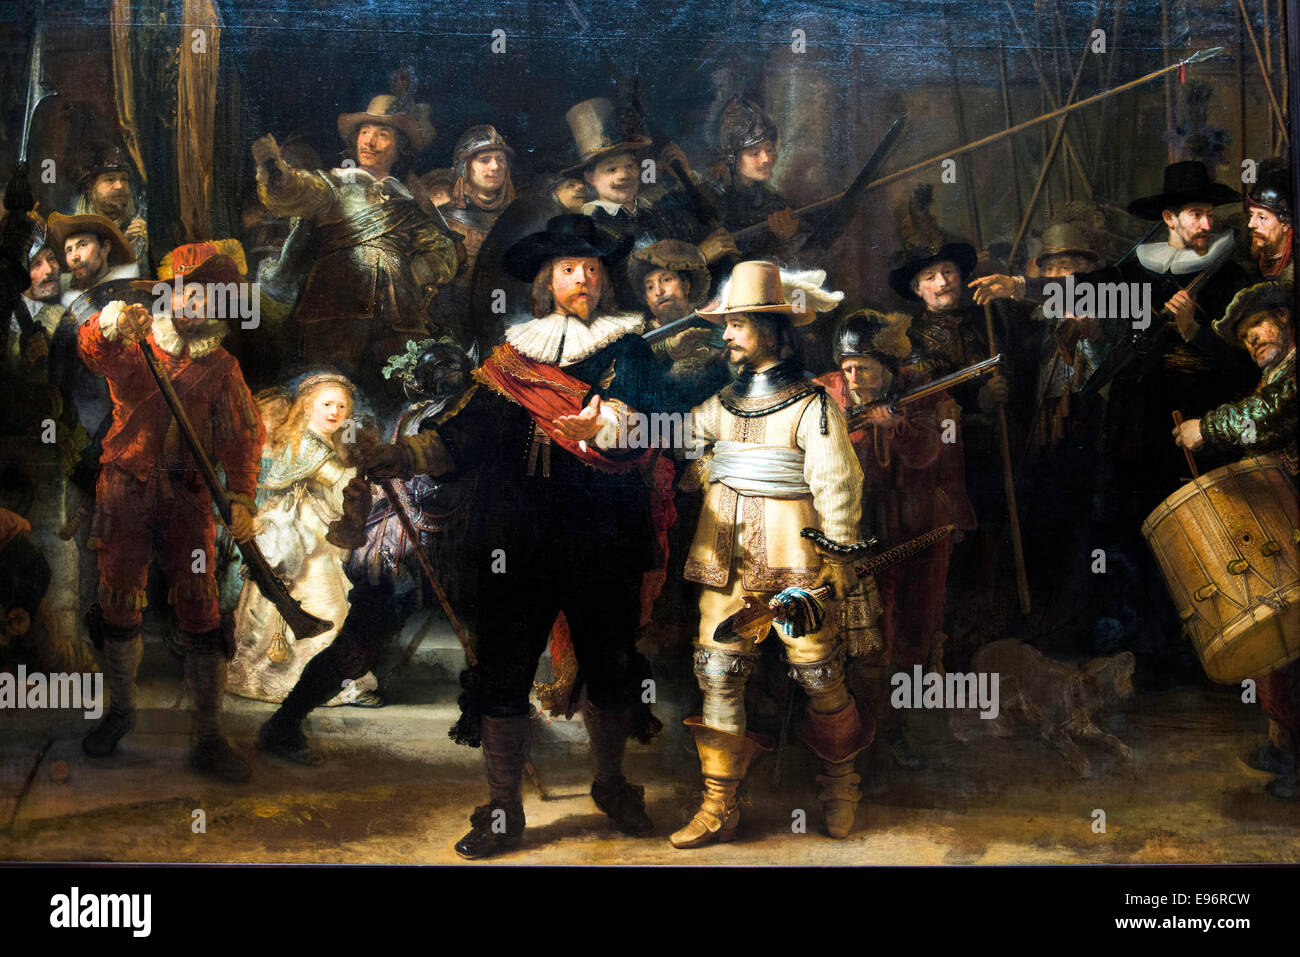 La Ronde de nuit de Rembrandt peinture au Rijksmuseum Amsterdam Hollande Pays-bas Europe Banque D'Images